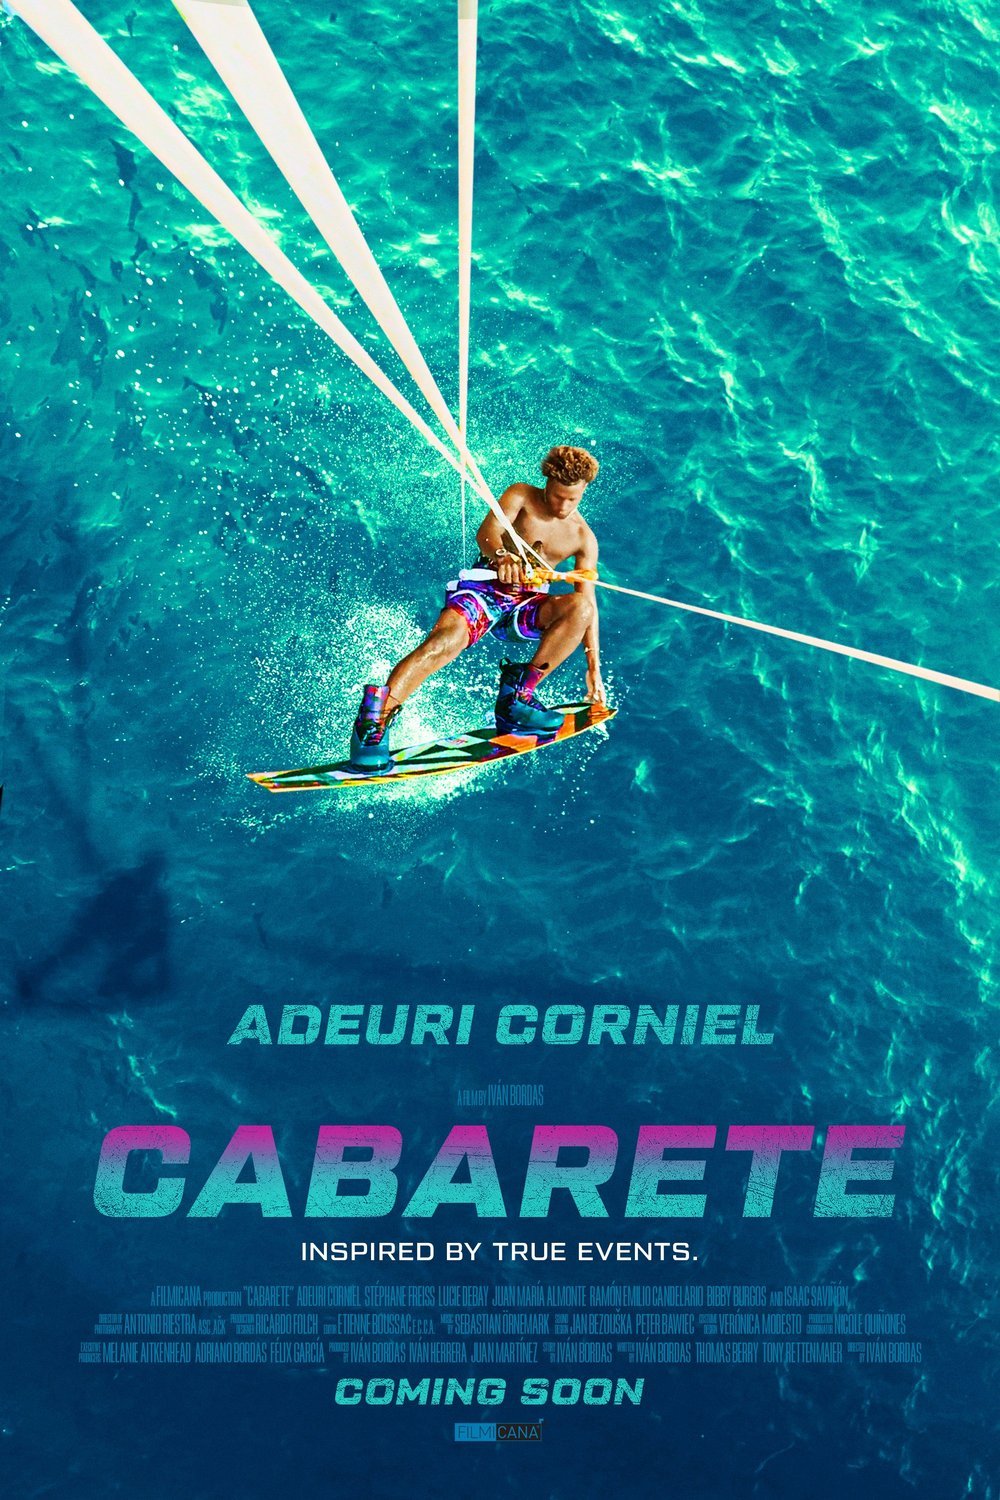 Spanish poster of the movie Cabarete